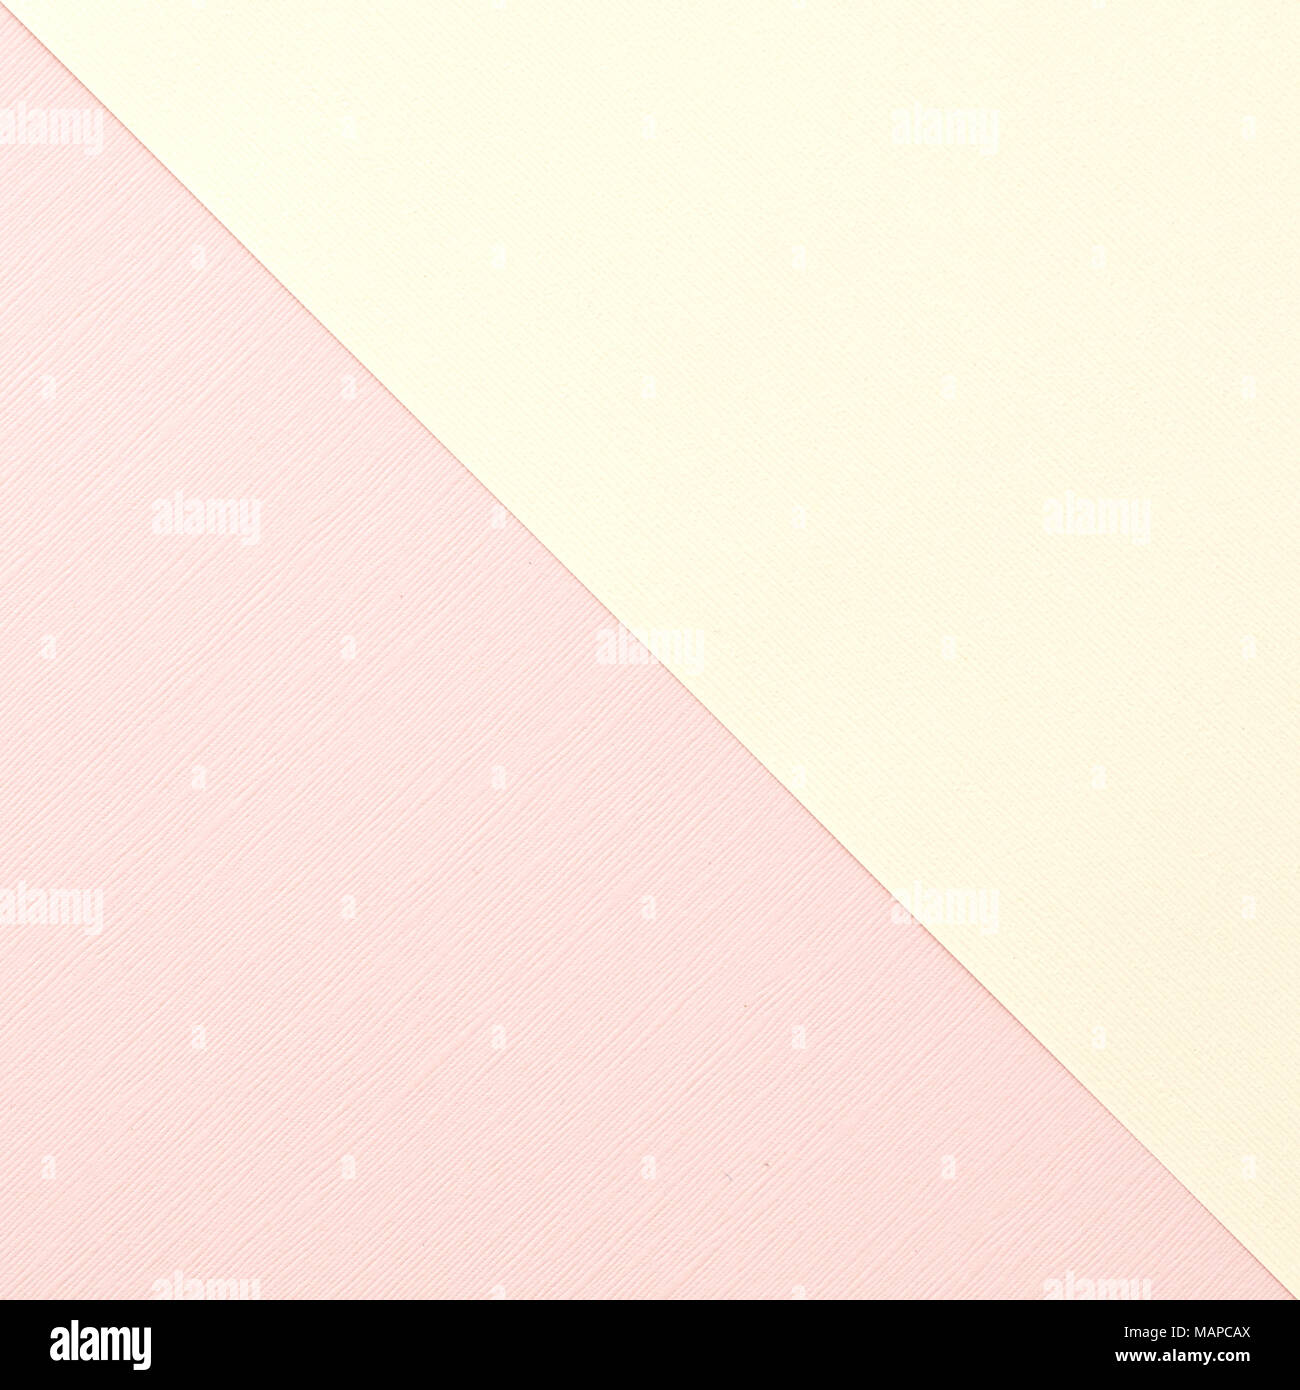 Gelb und Pink blush zwei getönten Papier Hintergrund Bildtextur für Kopieren oder Text Overlay Stockfoto